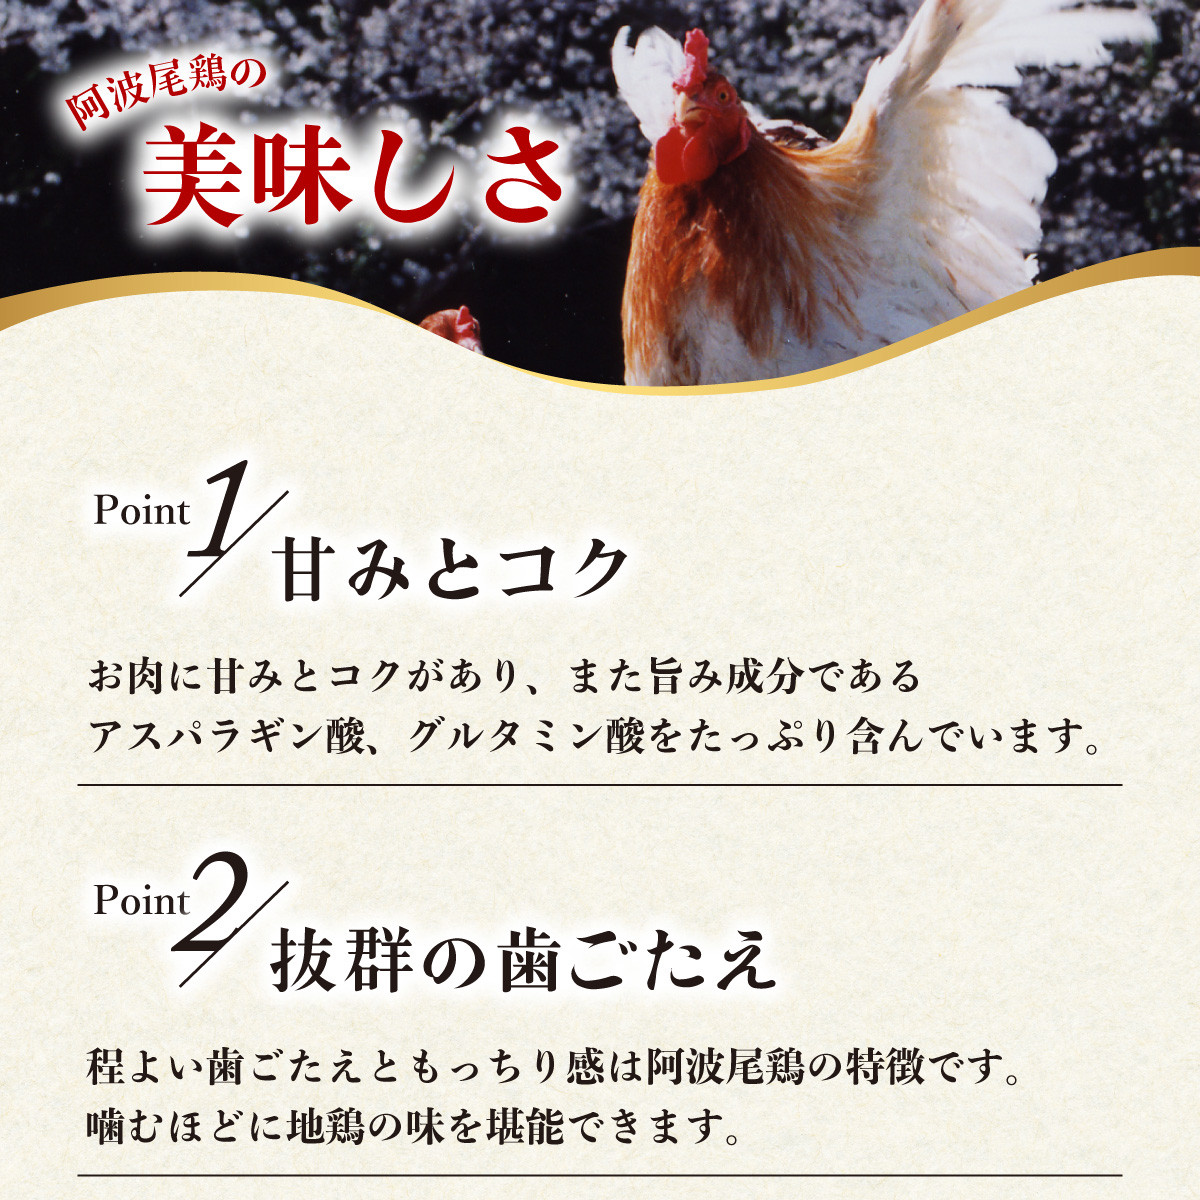 【阿波尾鶏バラ凍結定期便 12か月連続】阿波尾鶏 もも肉 切り身 バラ凍結 1.5kg×12回 計18kg 鶏肉 鶏もも 阿波尾鶏 冷凍 地鶏